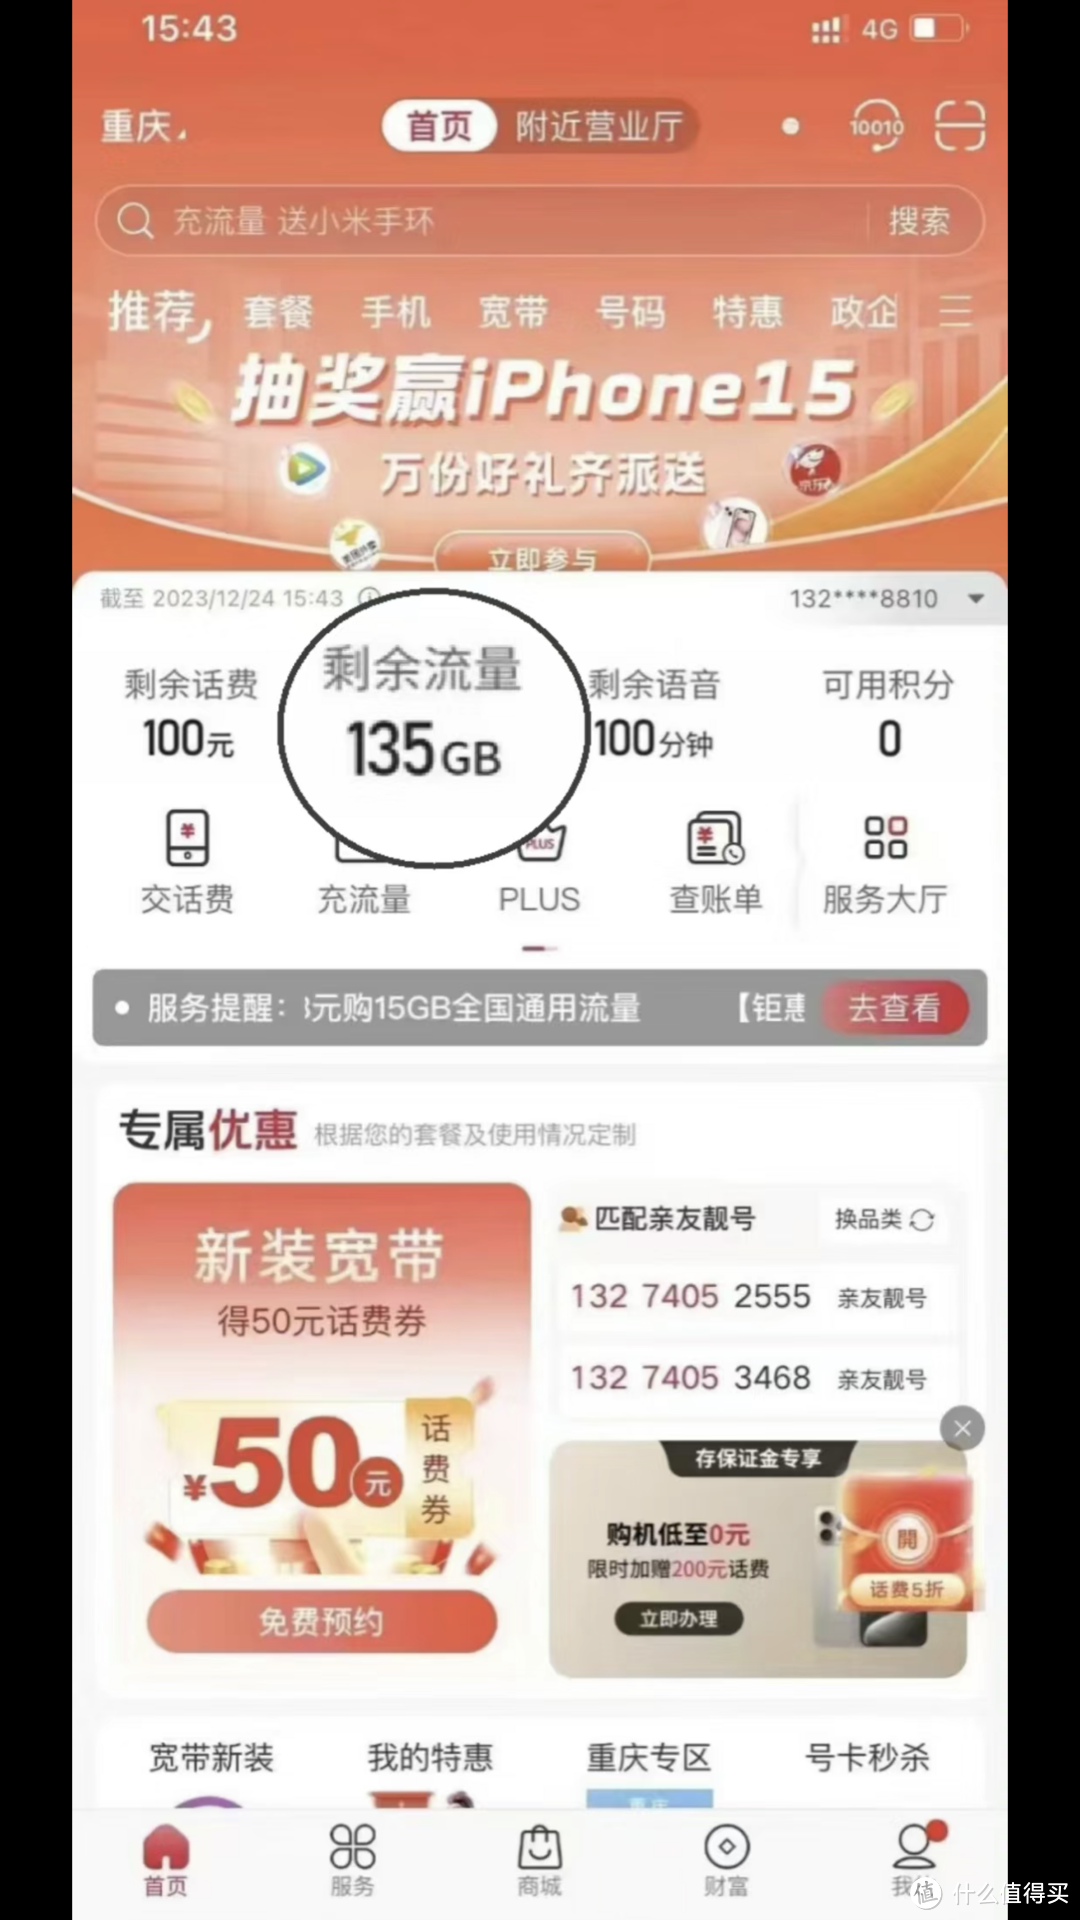 中国联通“水川卡”，29元135G流量+100分钟通话，到底谁在买单？用户：不买账？